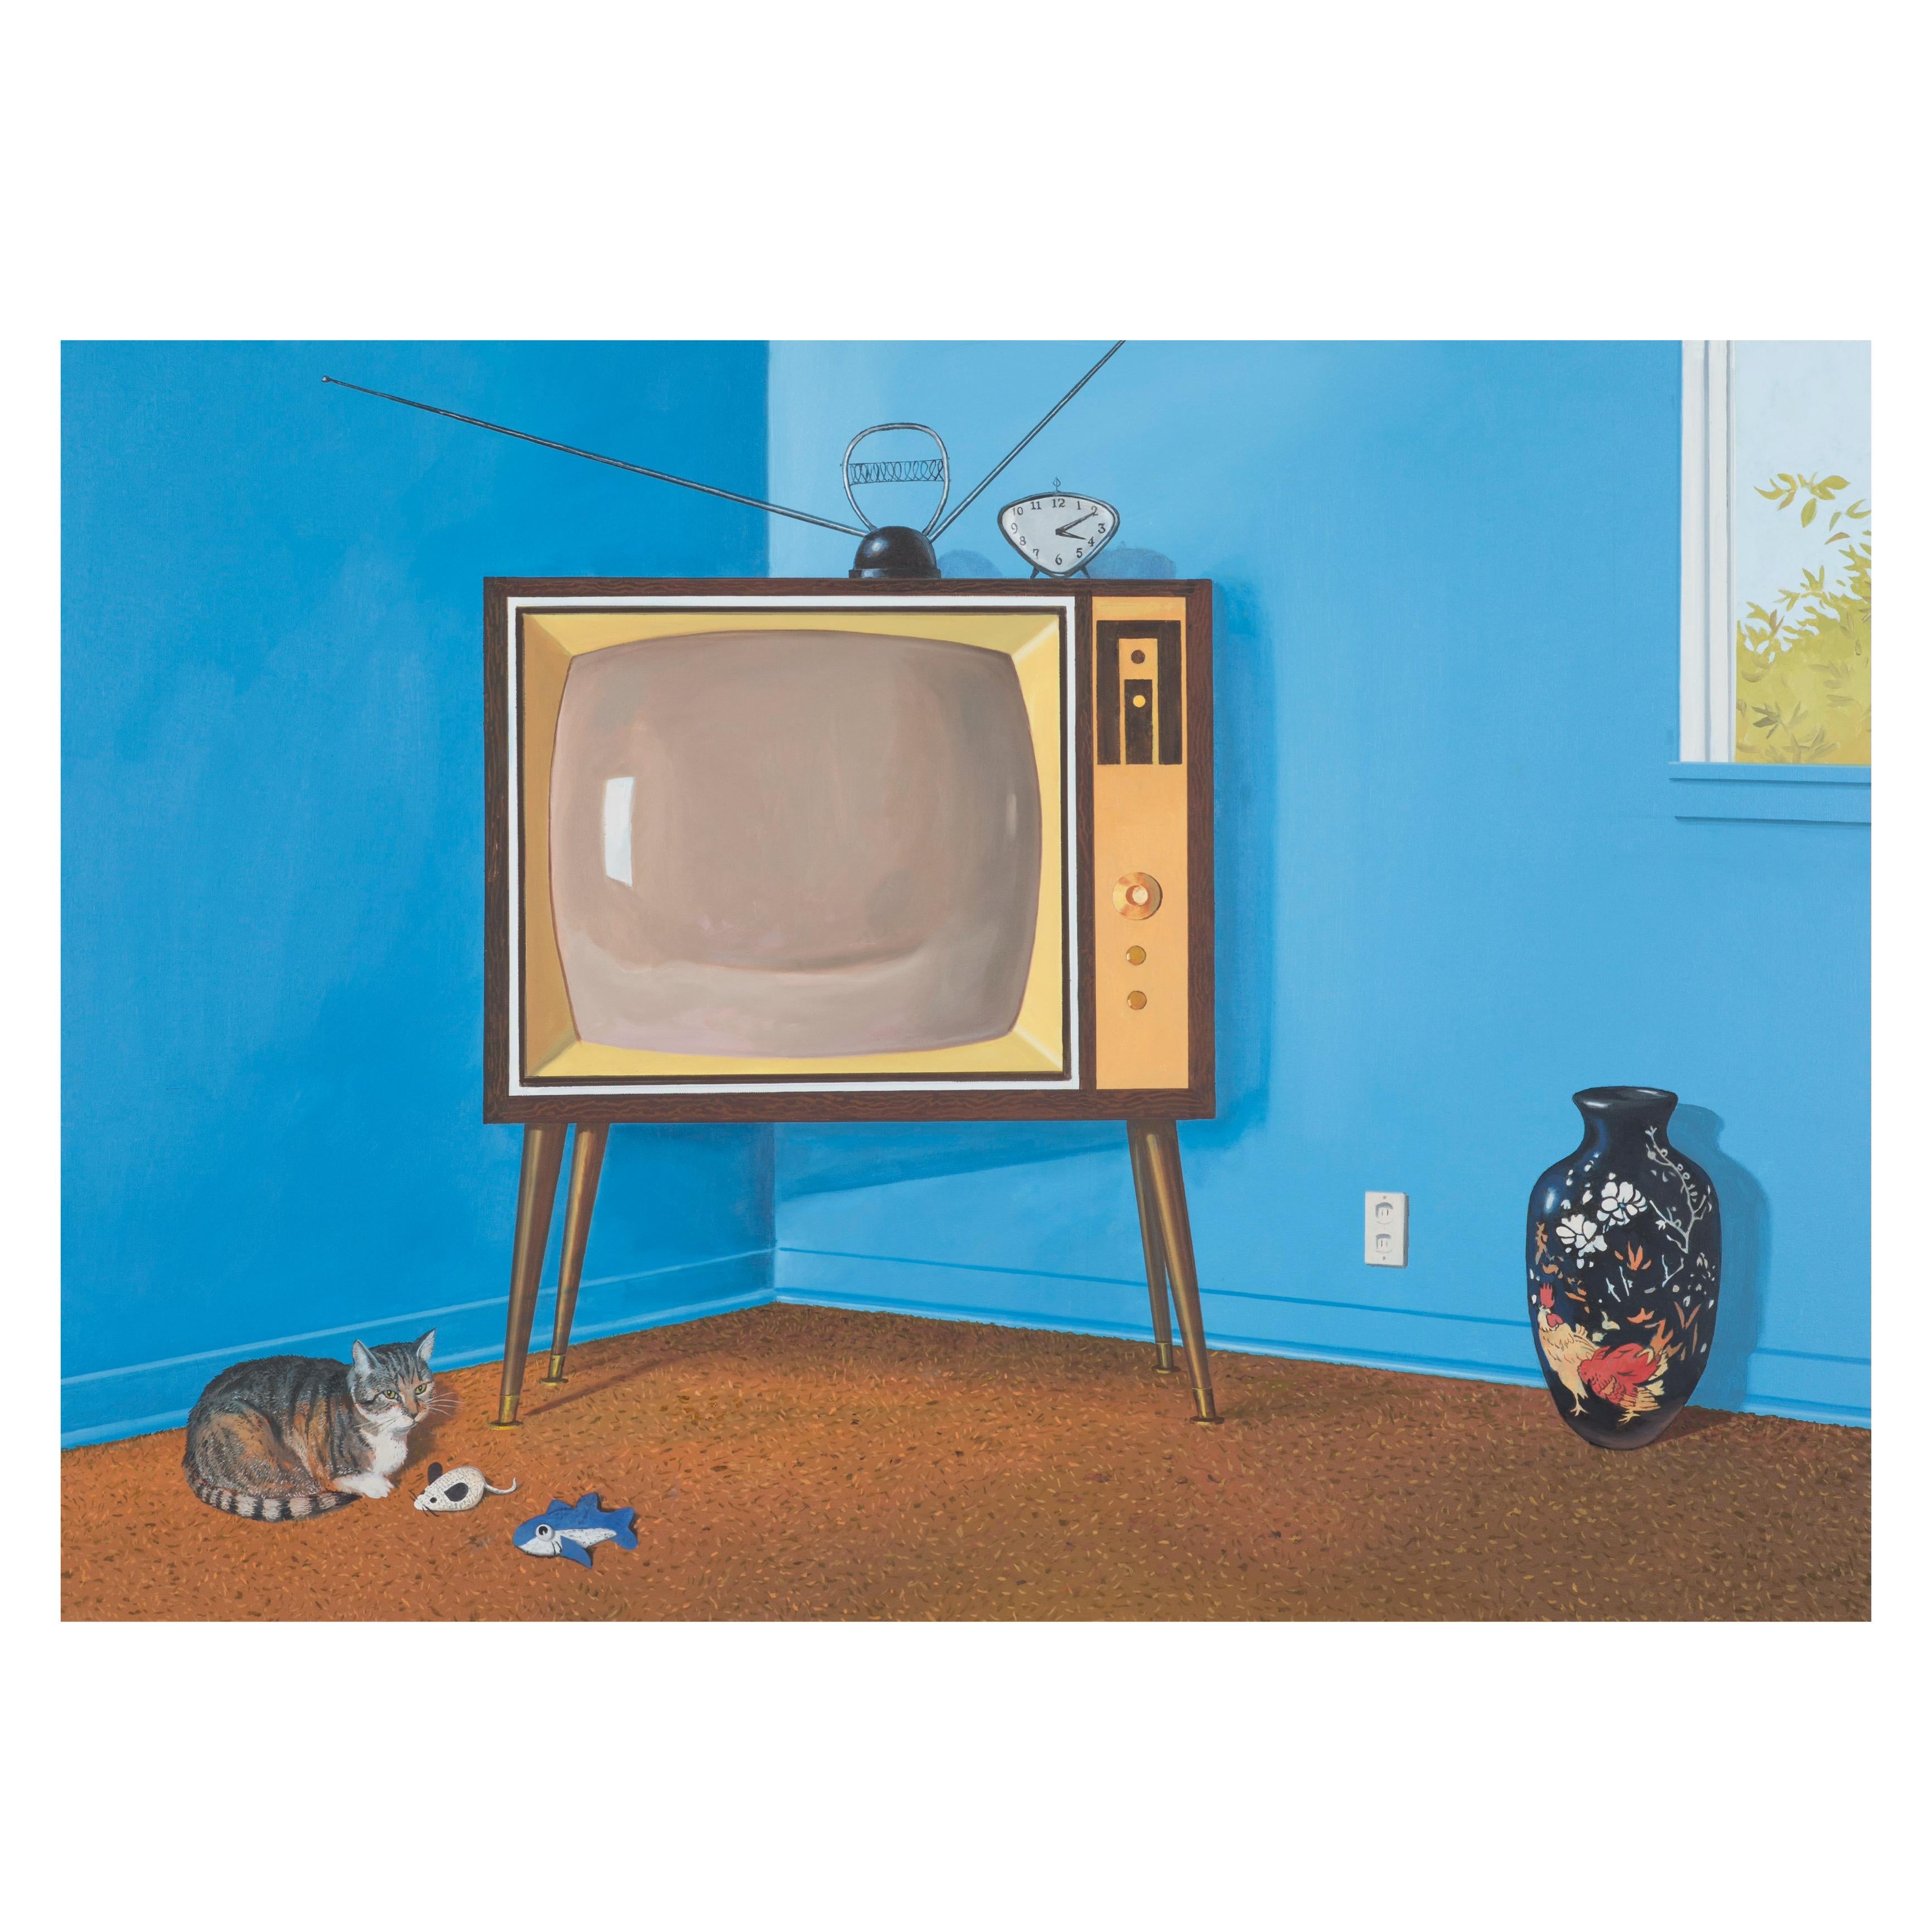 TV contemporaine, américaine, bleue, vintage, avec chat dans une pièce moderne du milieu du siècle dernier - Painting de Daniel Blagg